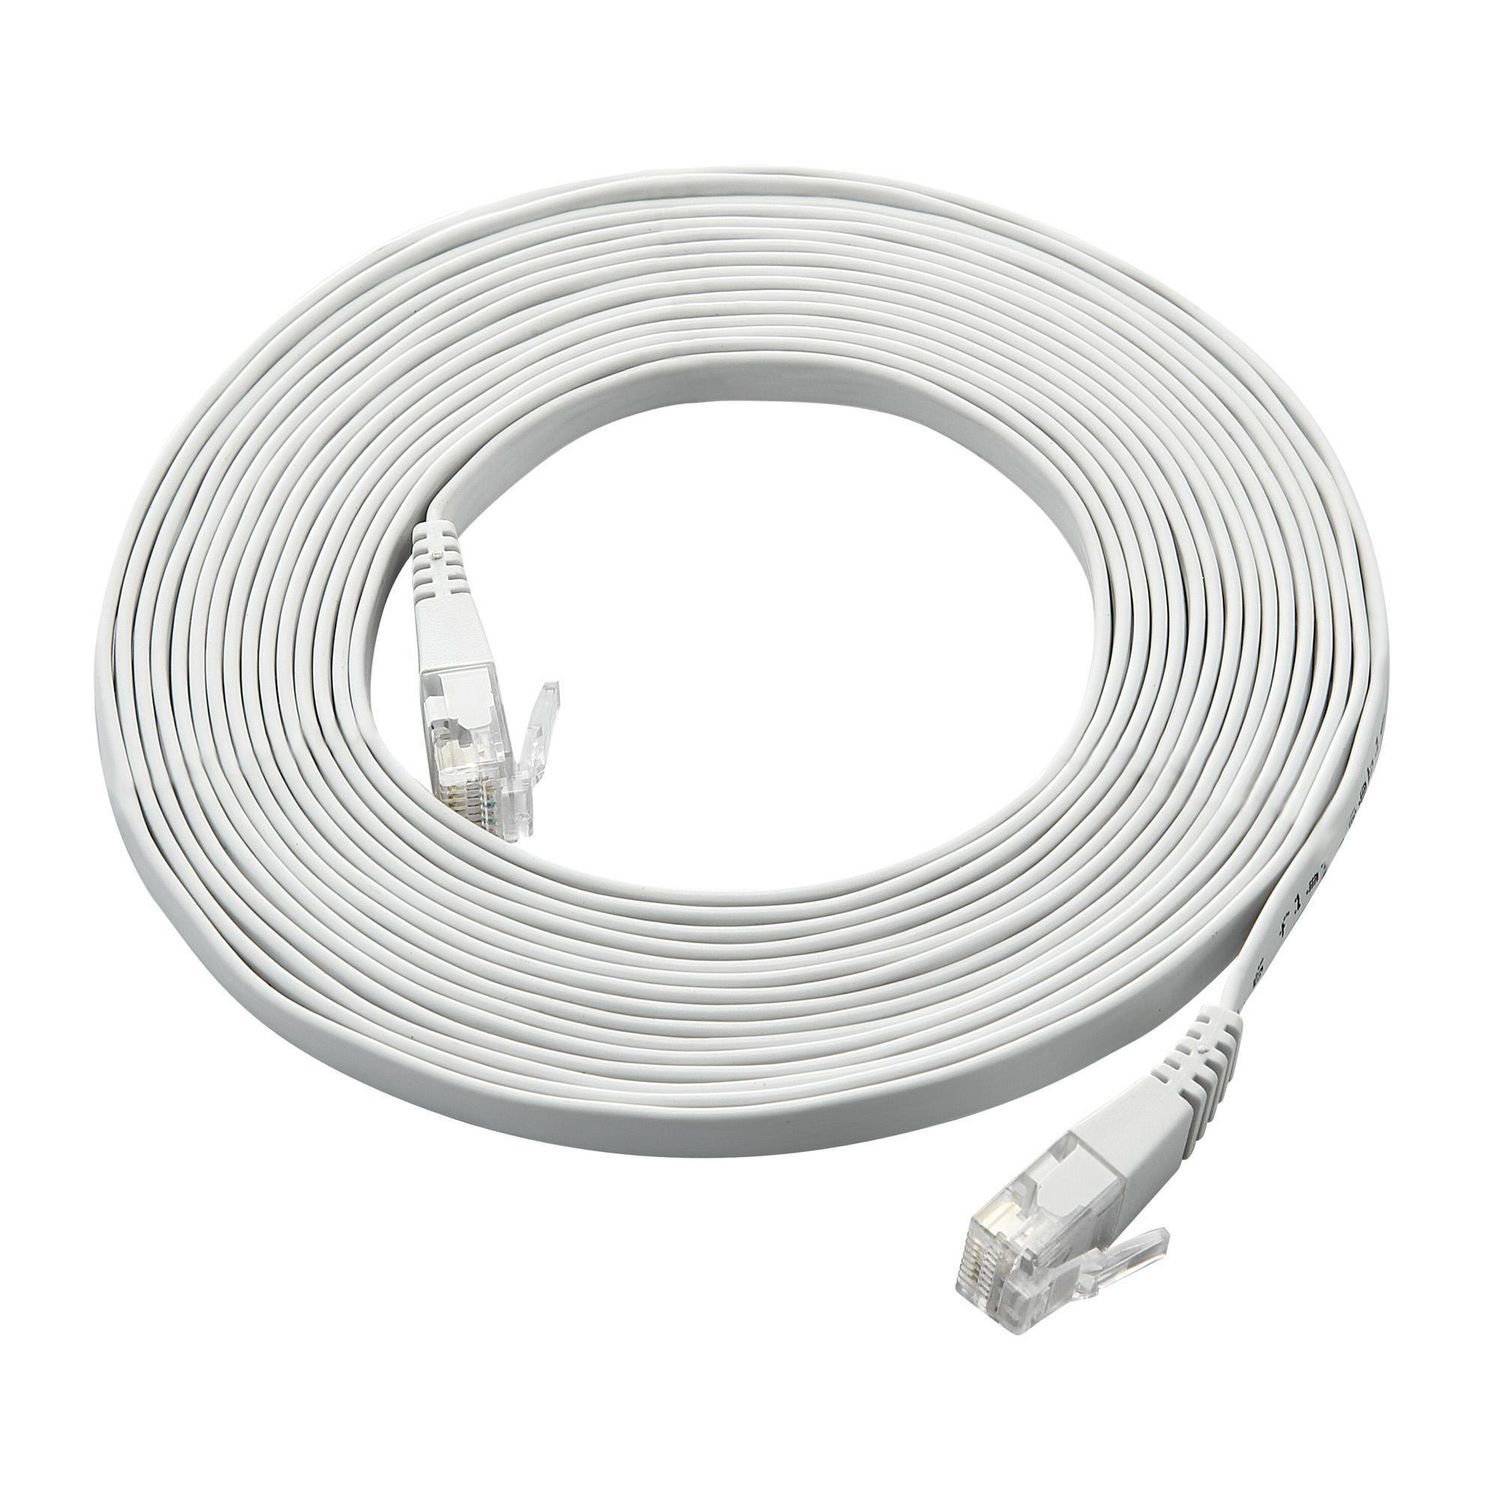 ONN ™ 4.2 meter RJ45 Flat CAT Cable (White)